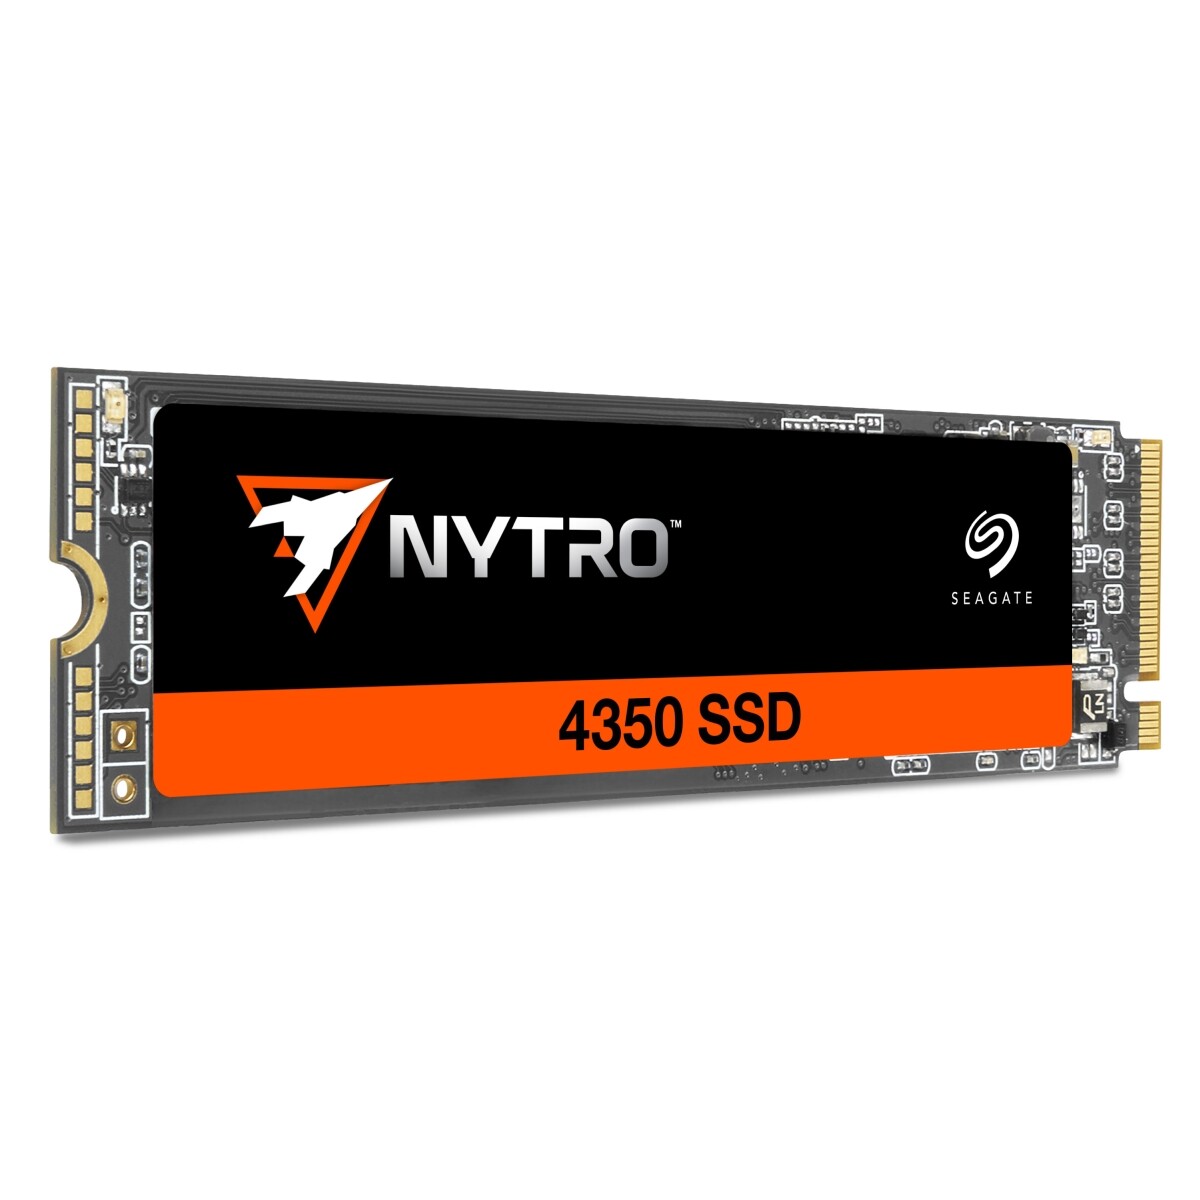 Seagate представила SSD Nytro 4350 NVMe для центрів обробки даних